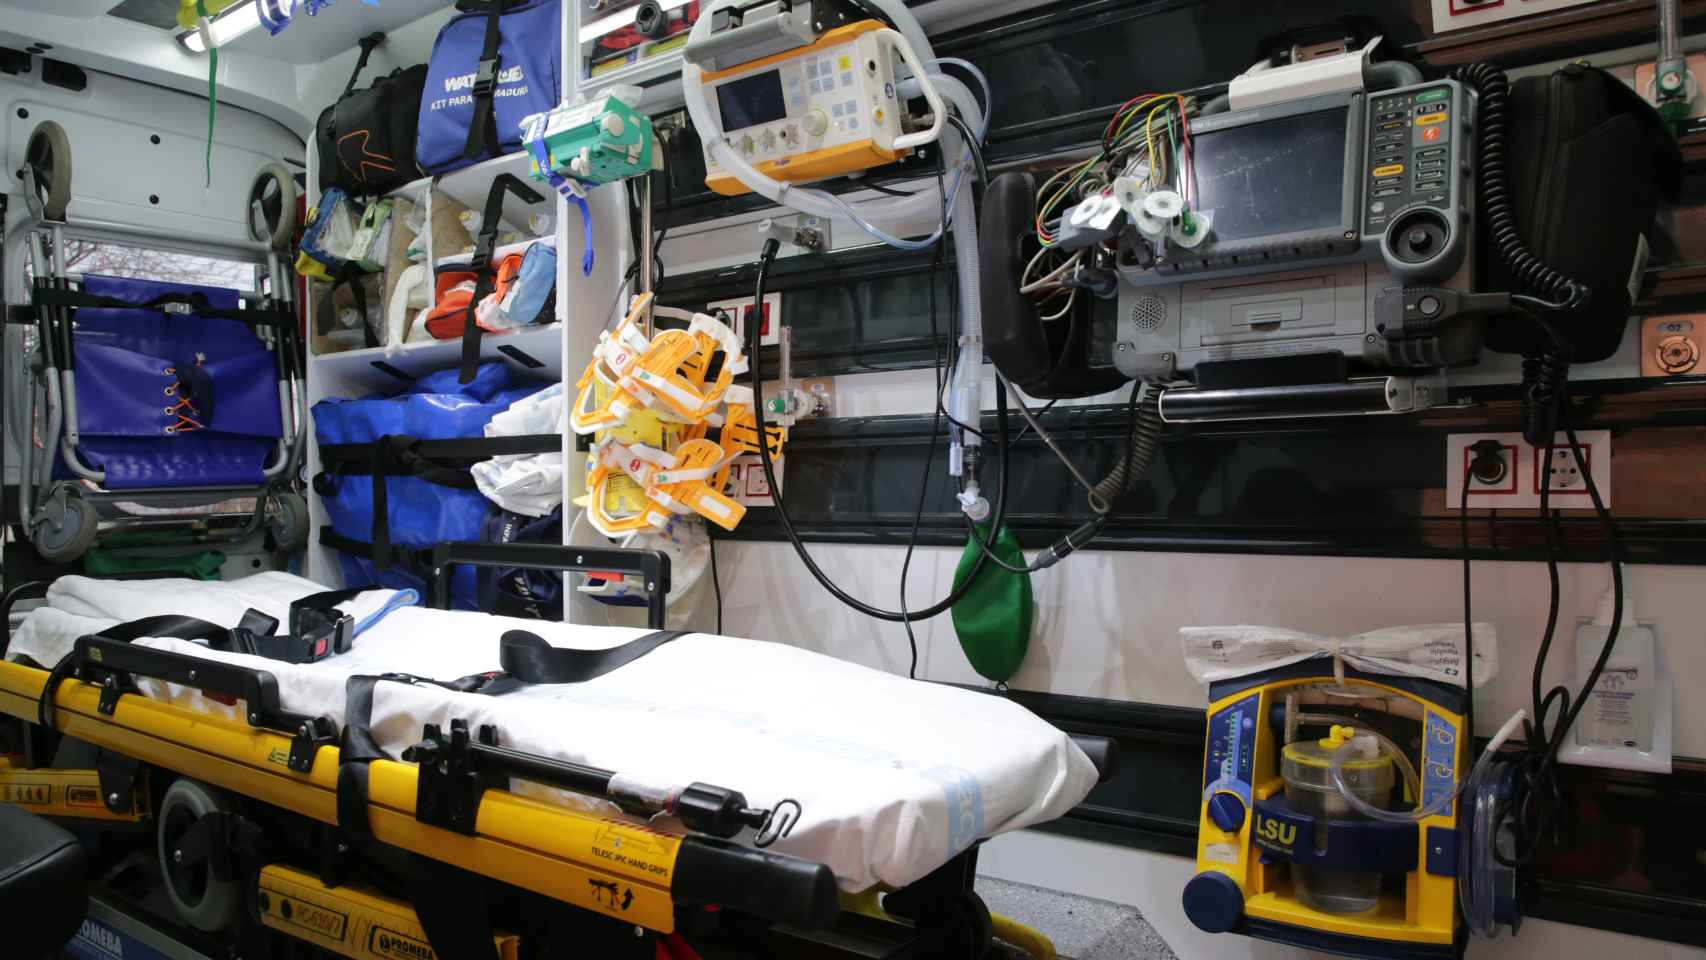 Interior de una ambulancia del 112 de Zamora